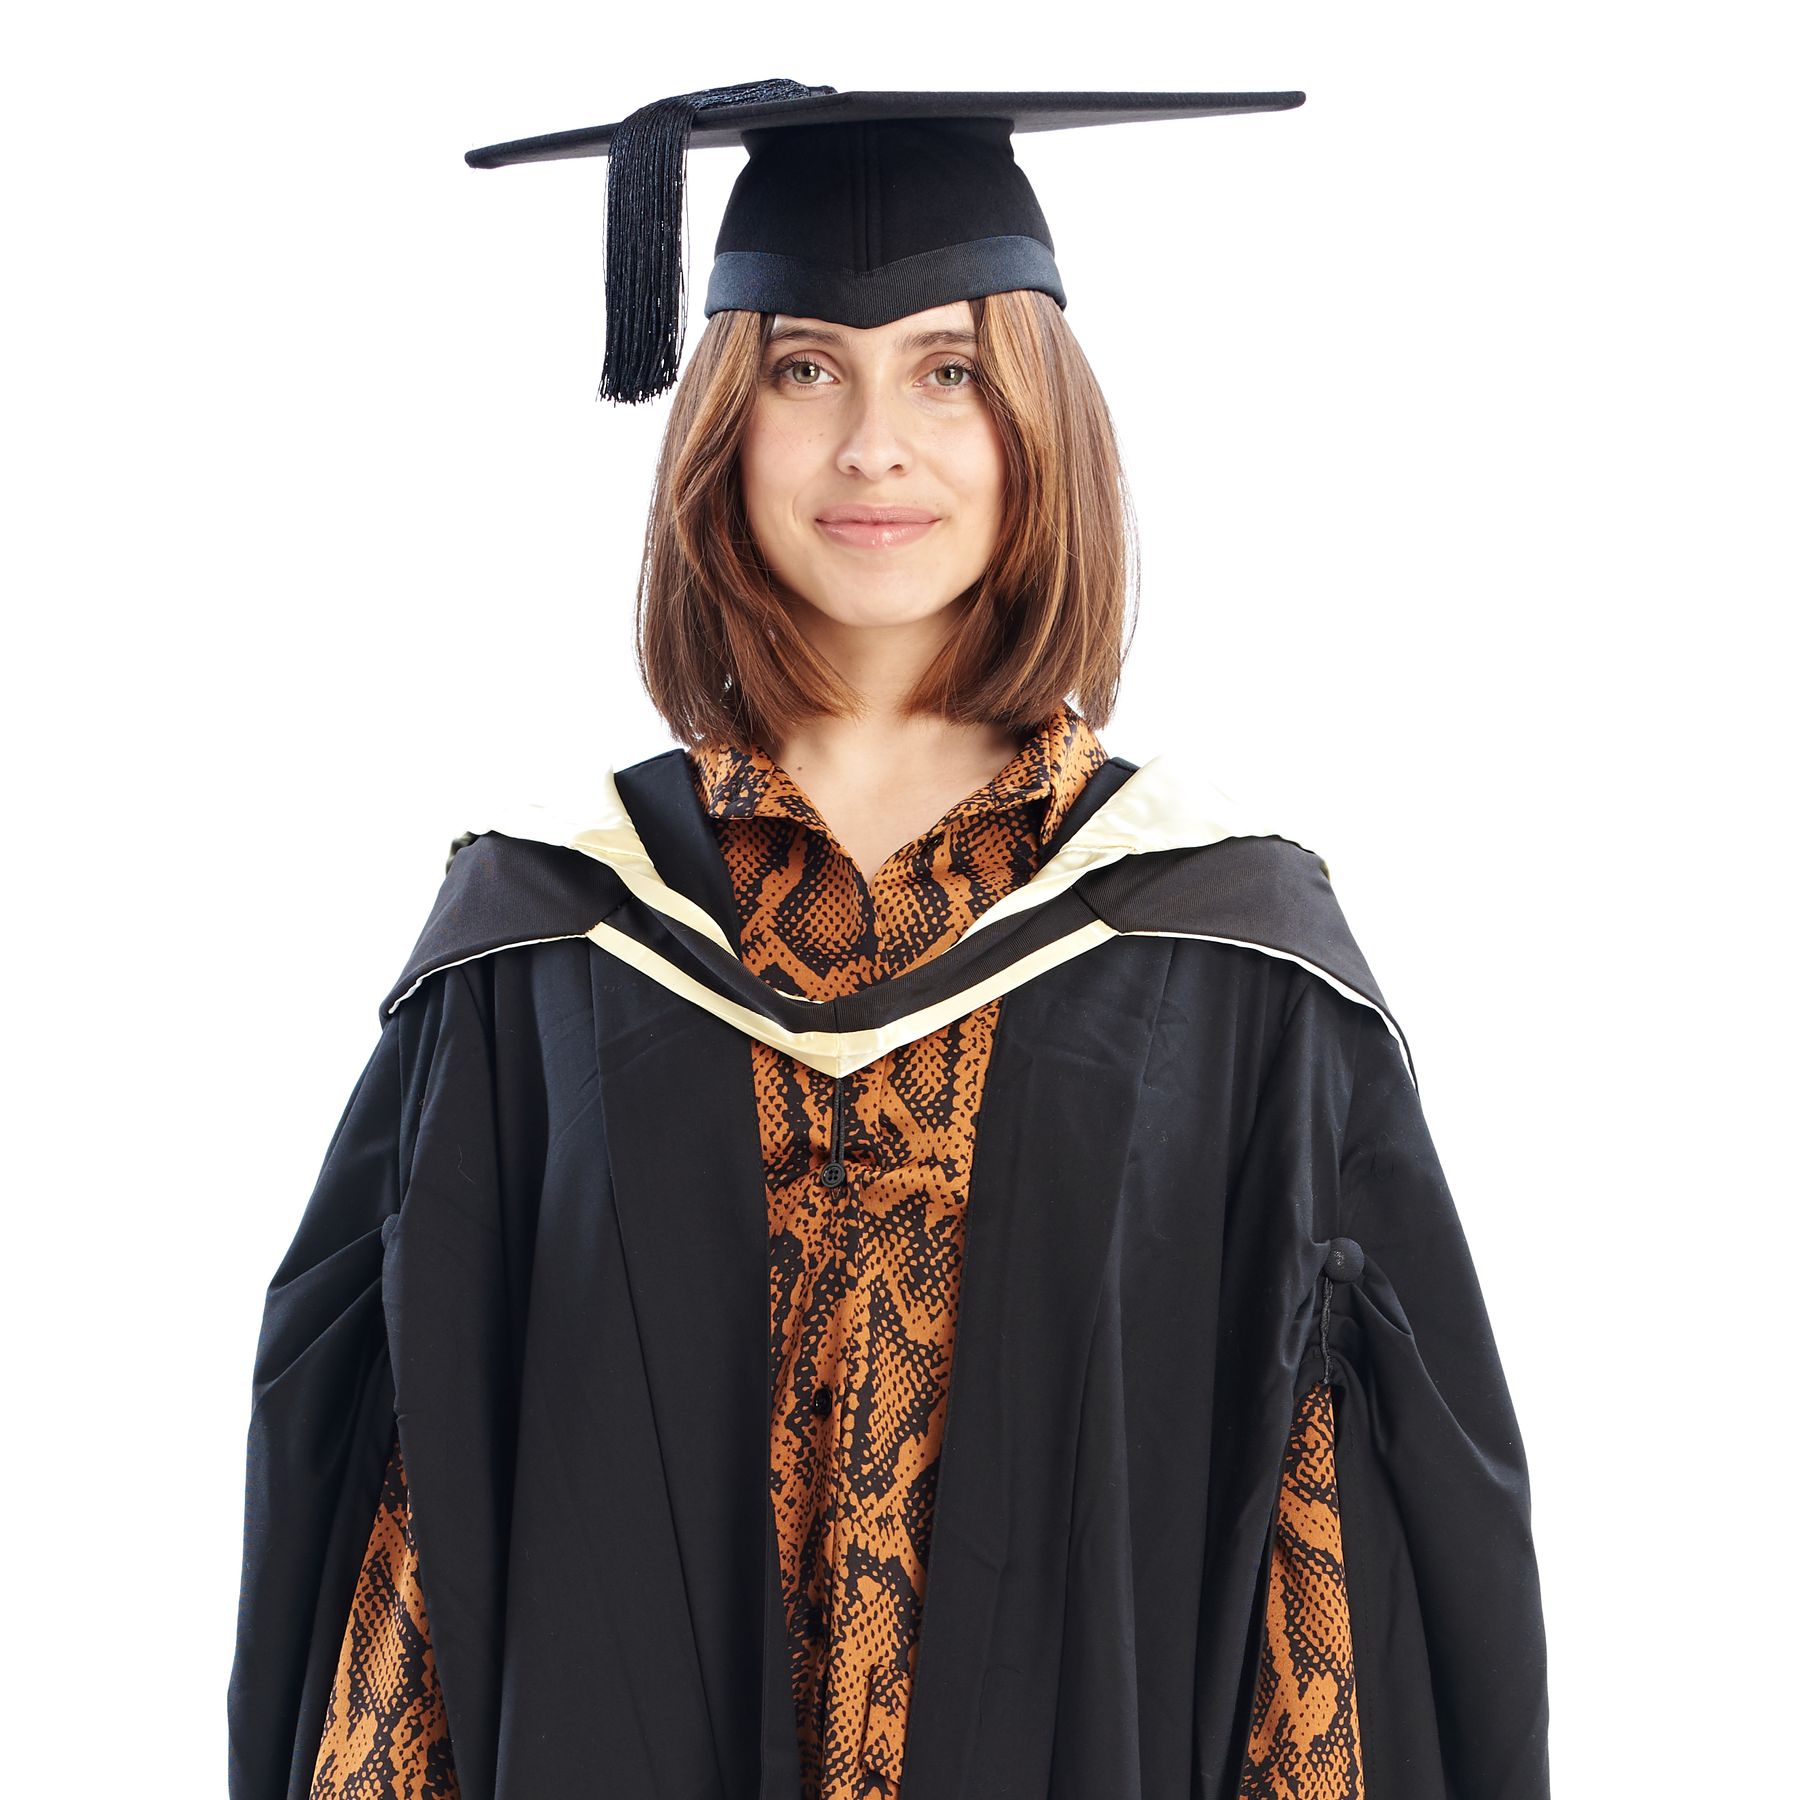 Black Graduation Gown for Children | Kids Graduation Gown